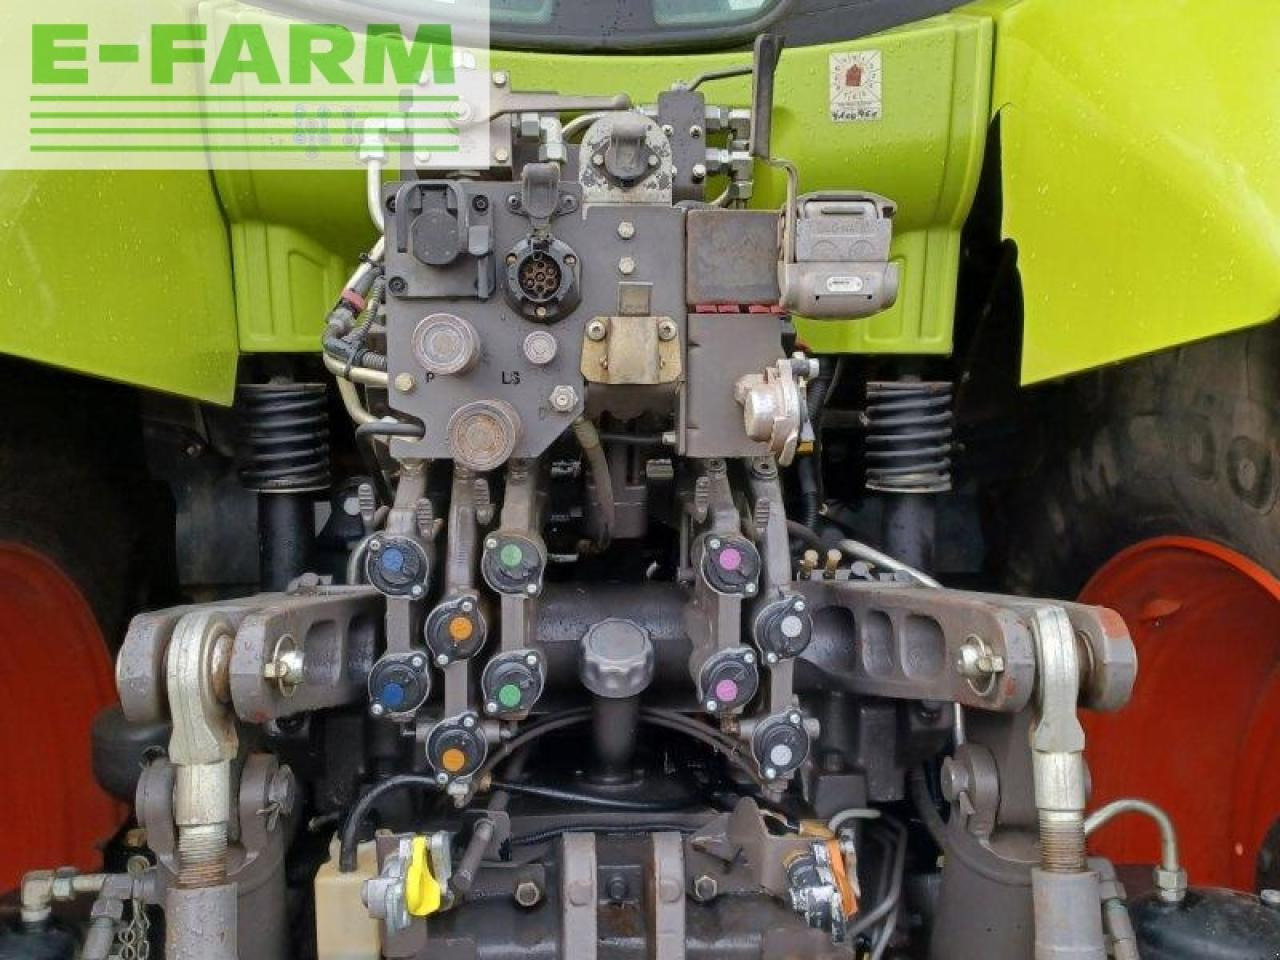 Farm tractor CLAAS axion 830 cmatic cebis